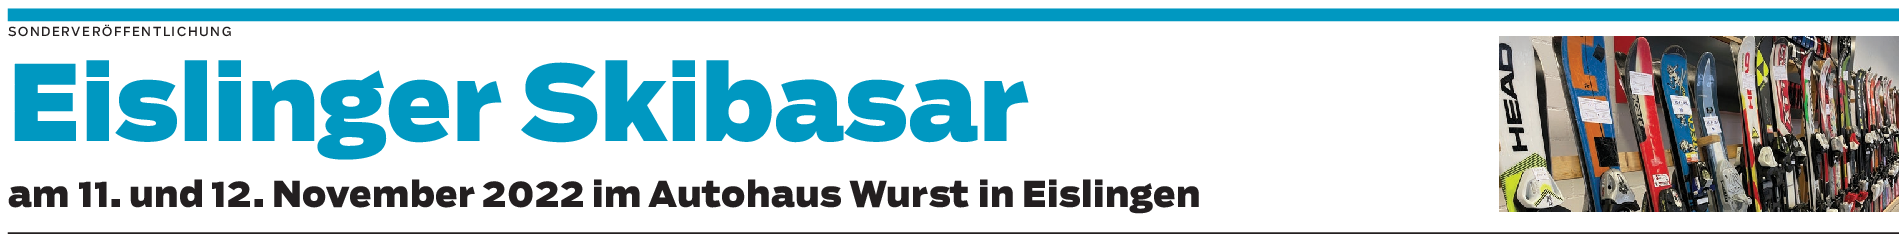 Skibasar im Autohaus Wurst: Der Winter kann kommen, so das Team der DSV-Skischule Eislingen